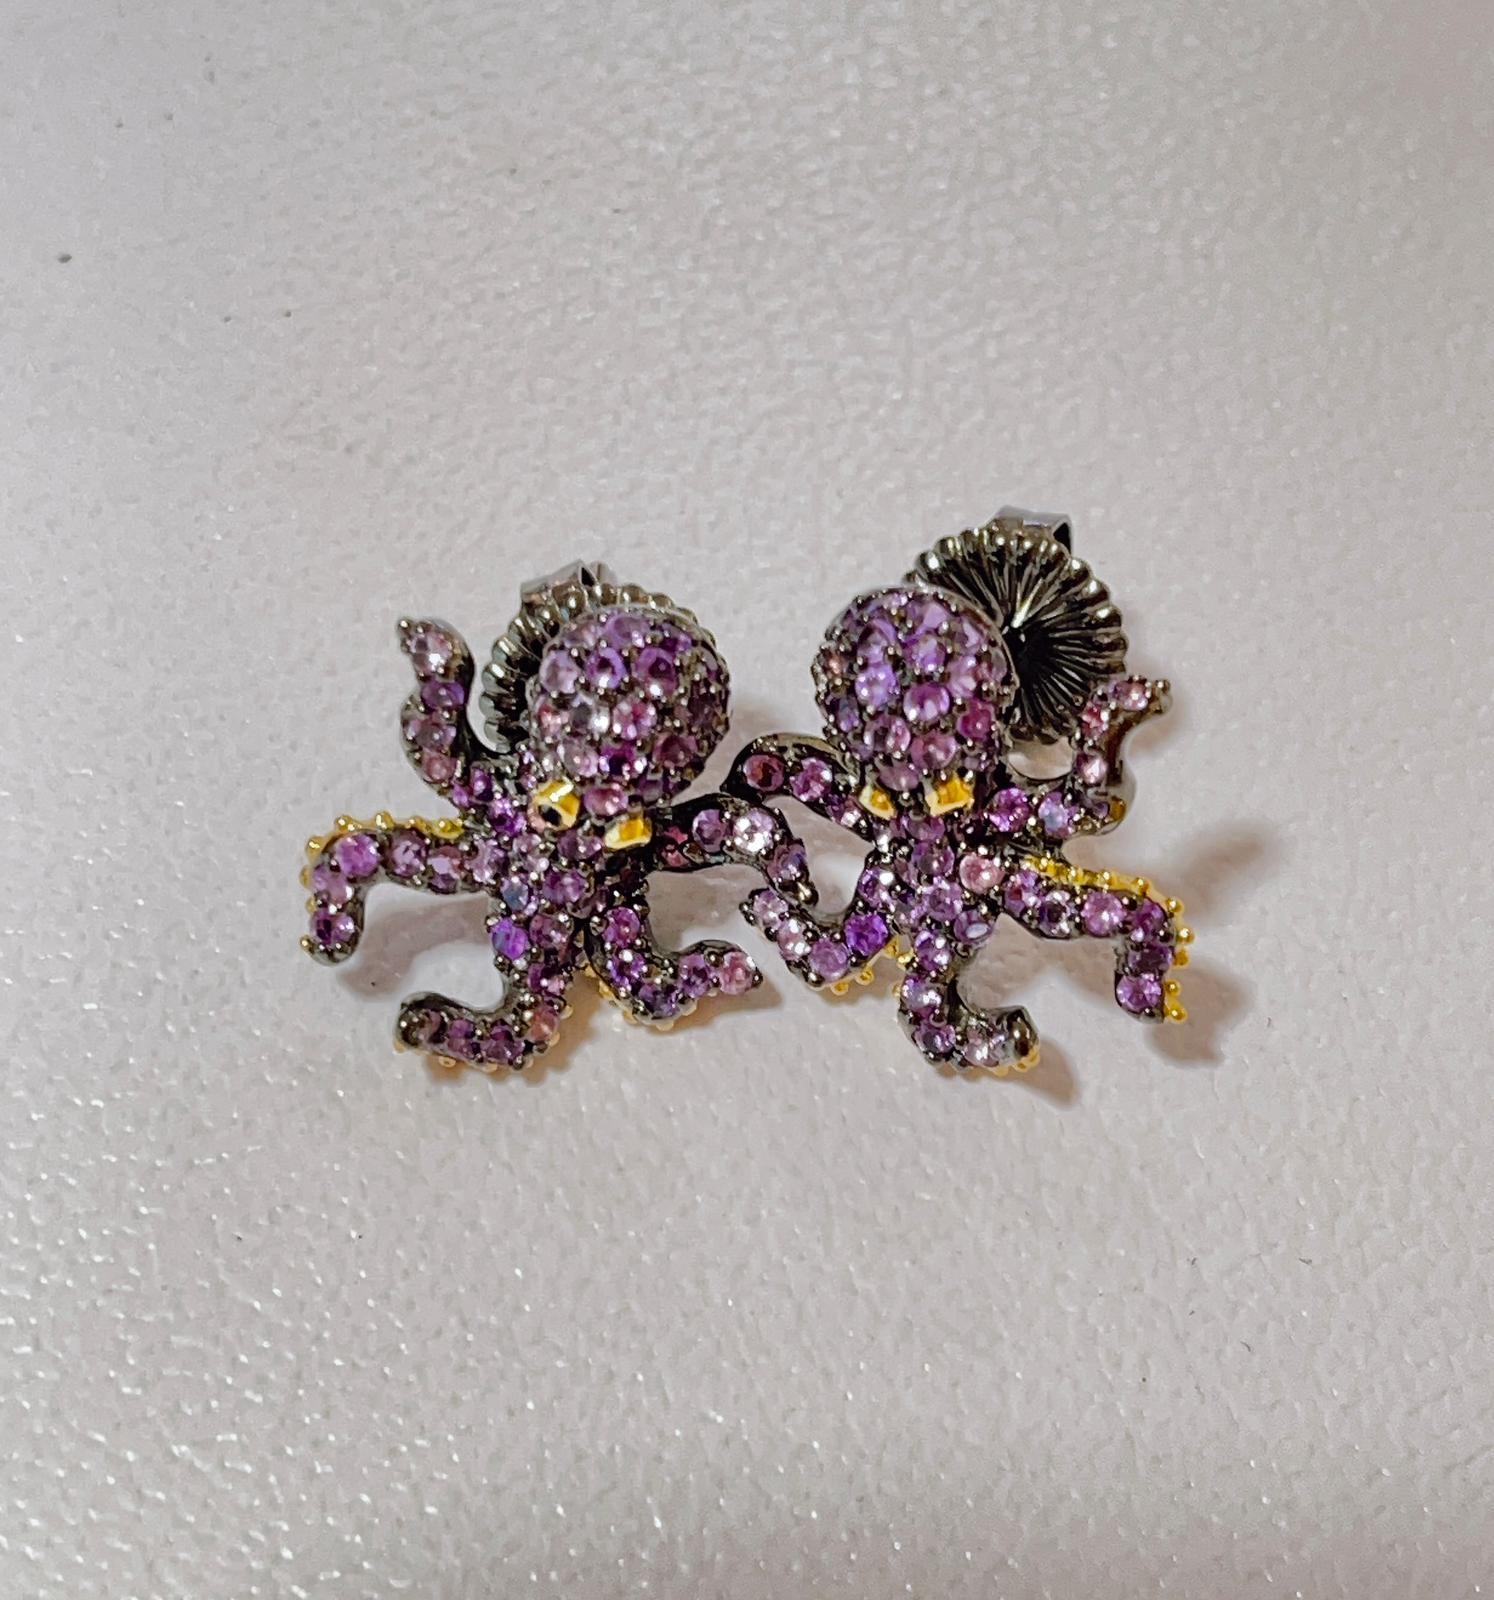 “Orient” Green Garnet or Purple Amethyst Earrings in 22k Gold & Silver For Sale 4